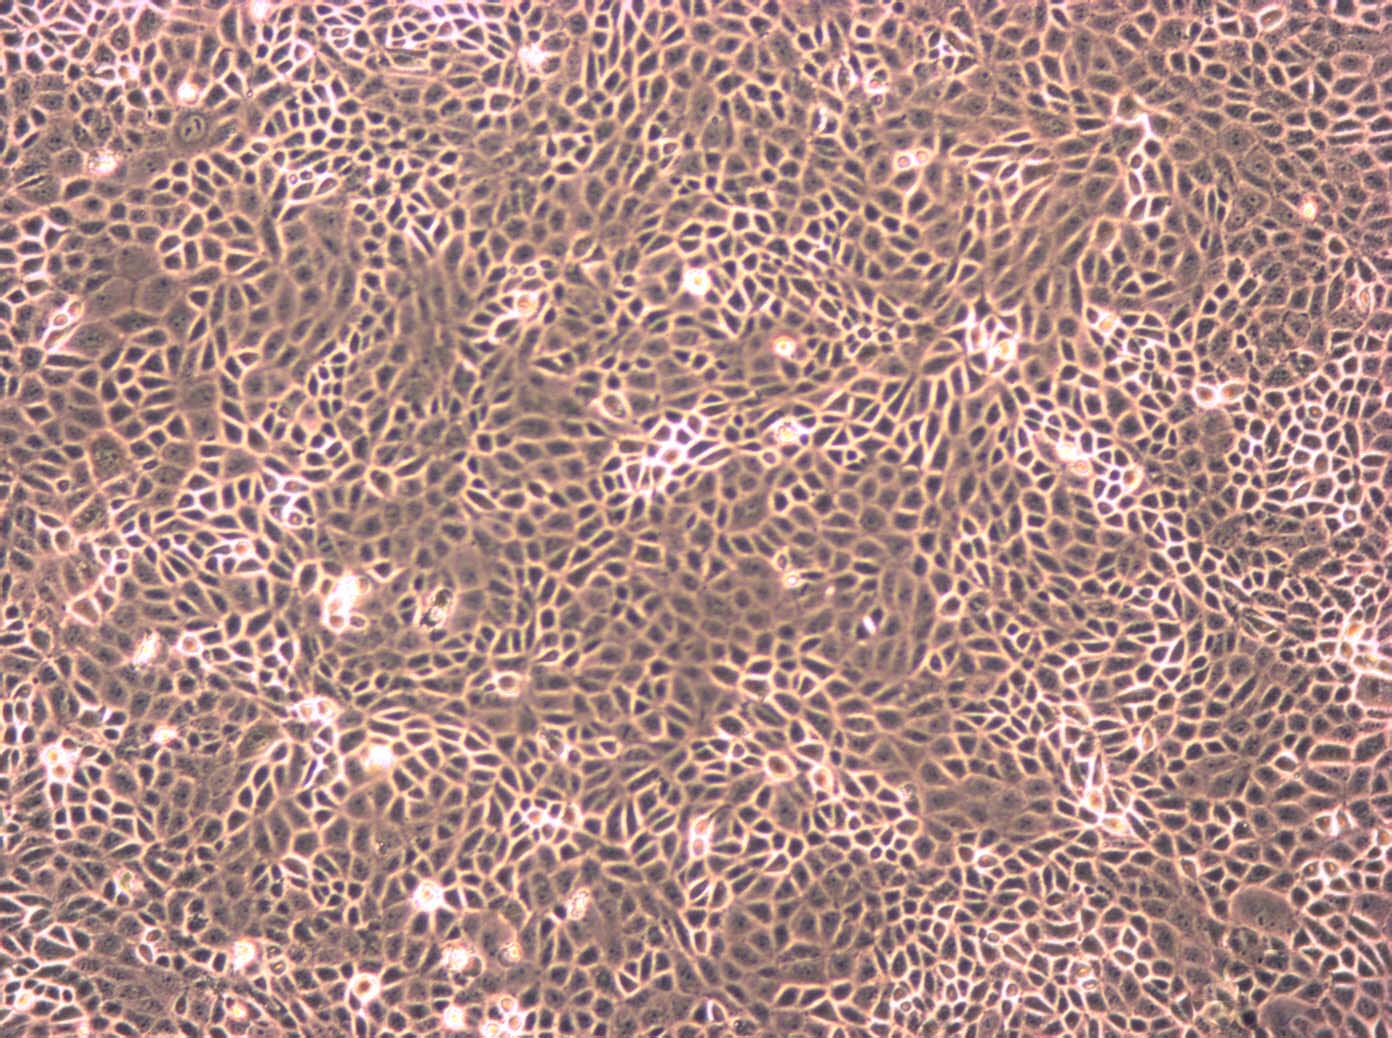 THLE-3:人肝永生化复苏细胞(提供STR鉴定图谱)